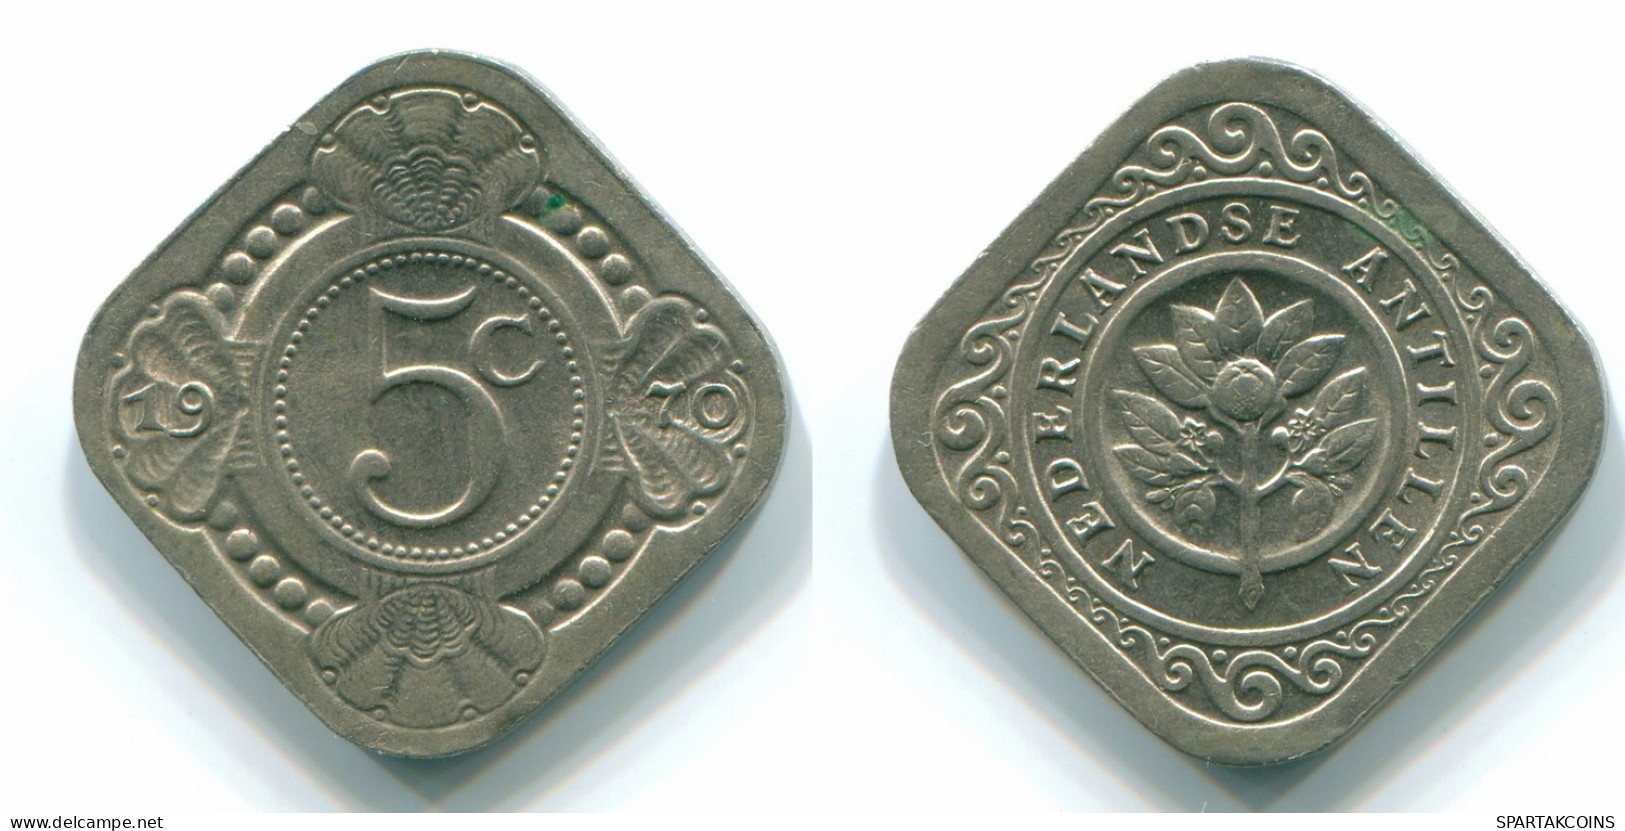 5 CENTS 1970 NIEDERLÄNDISCHE ANTILLEN Nickel Koloniale Münze #S12514.D.A - Antillas Neerlandesas